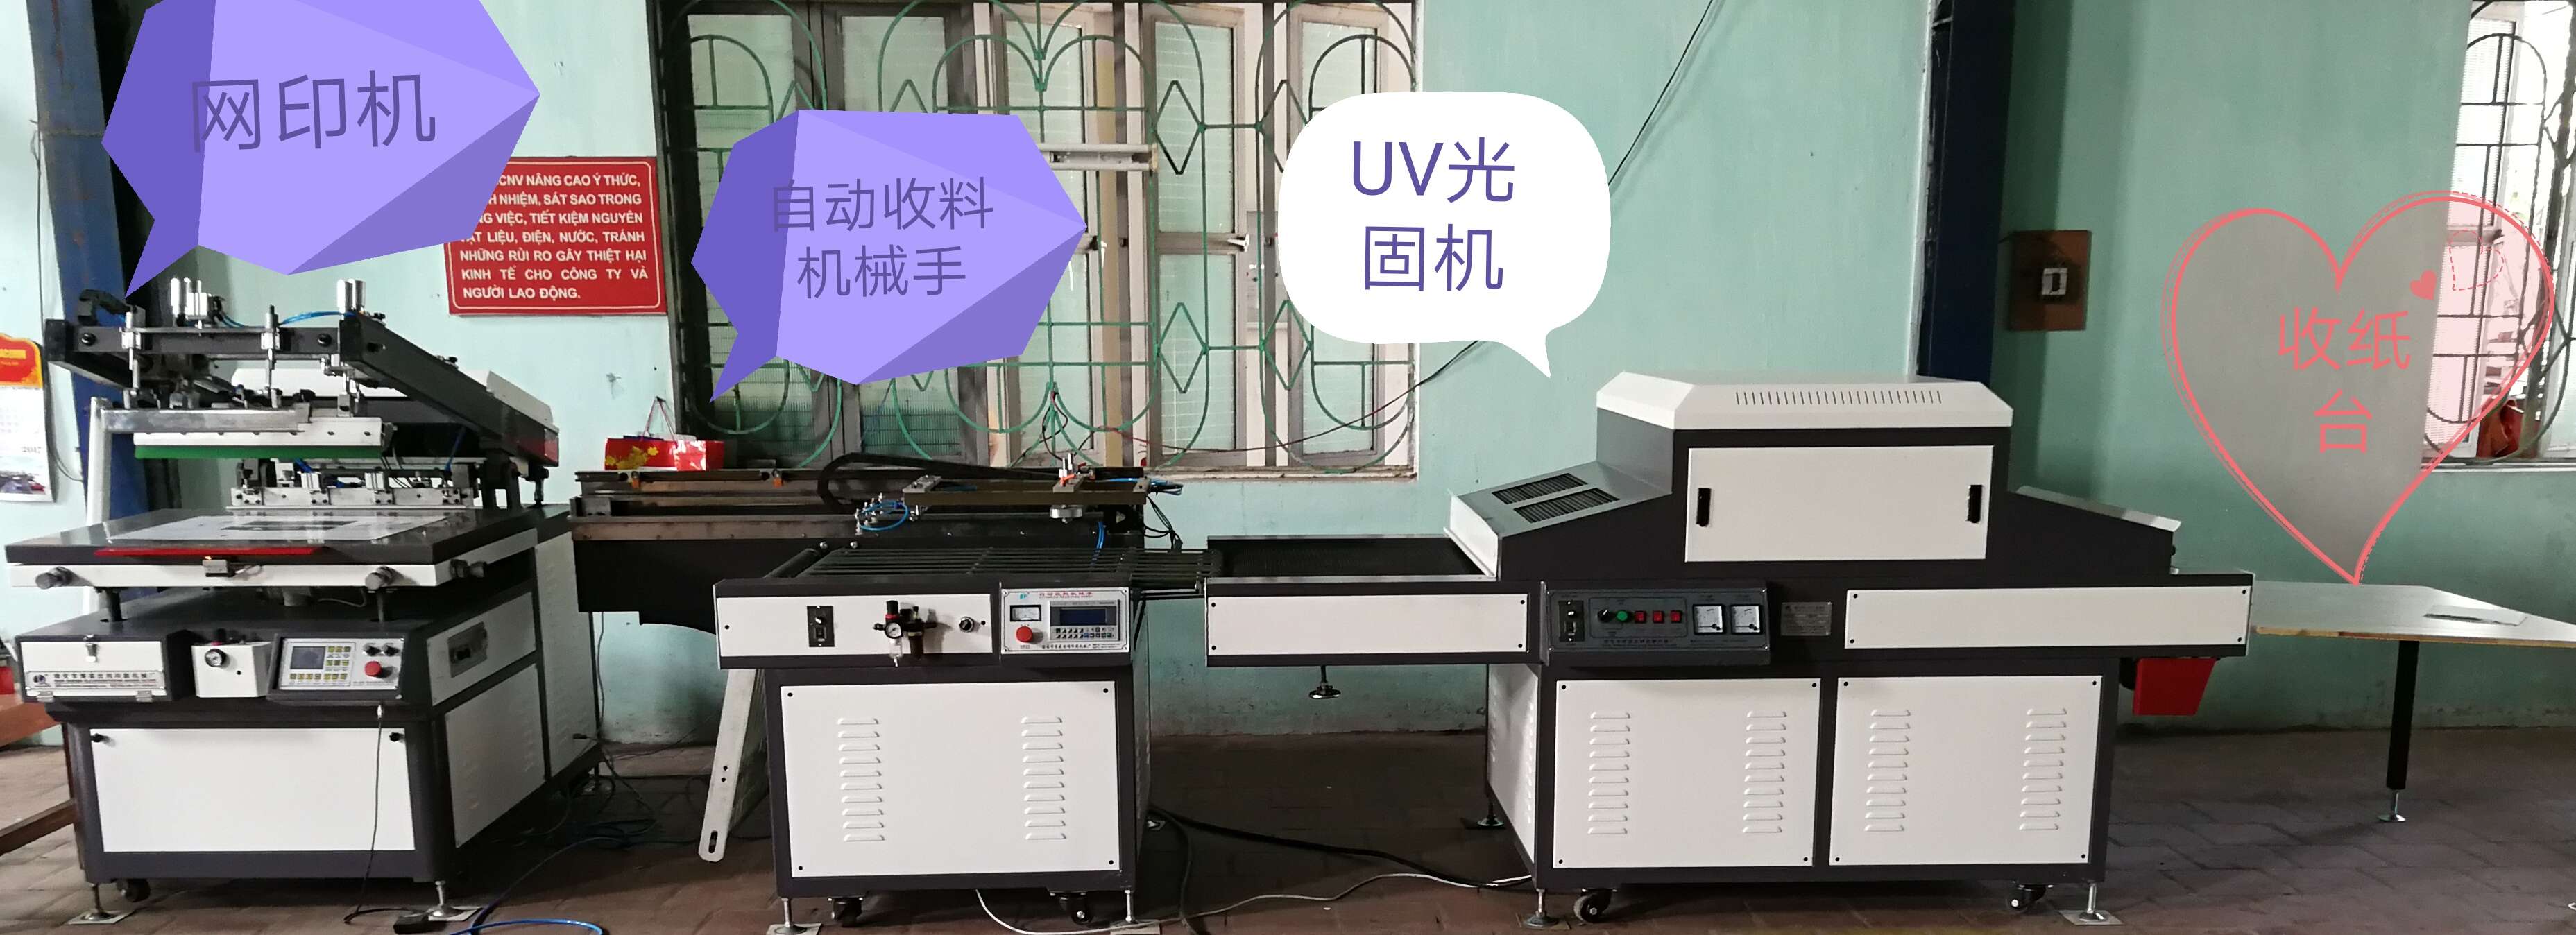 دستگاه چاپ صفحه ابریشم با دستگاه خشک کردن خودکار و دستگاه خشک کردن UV